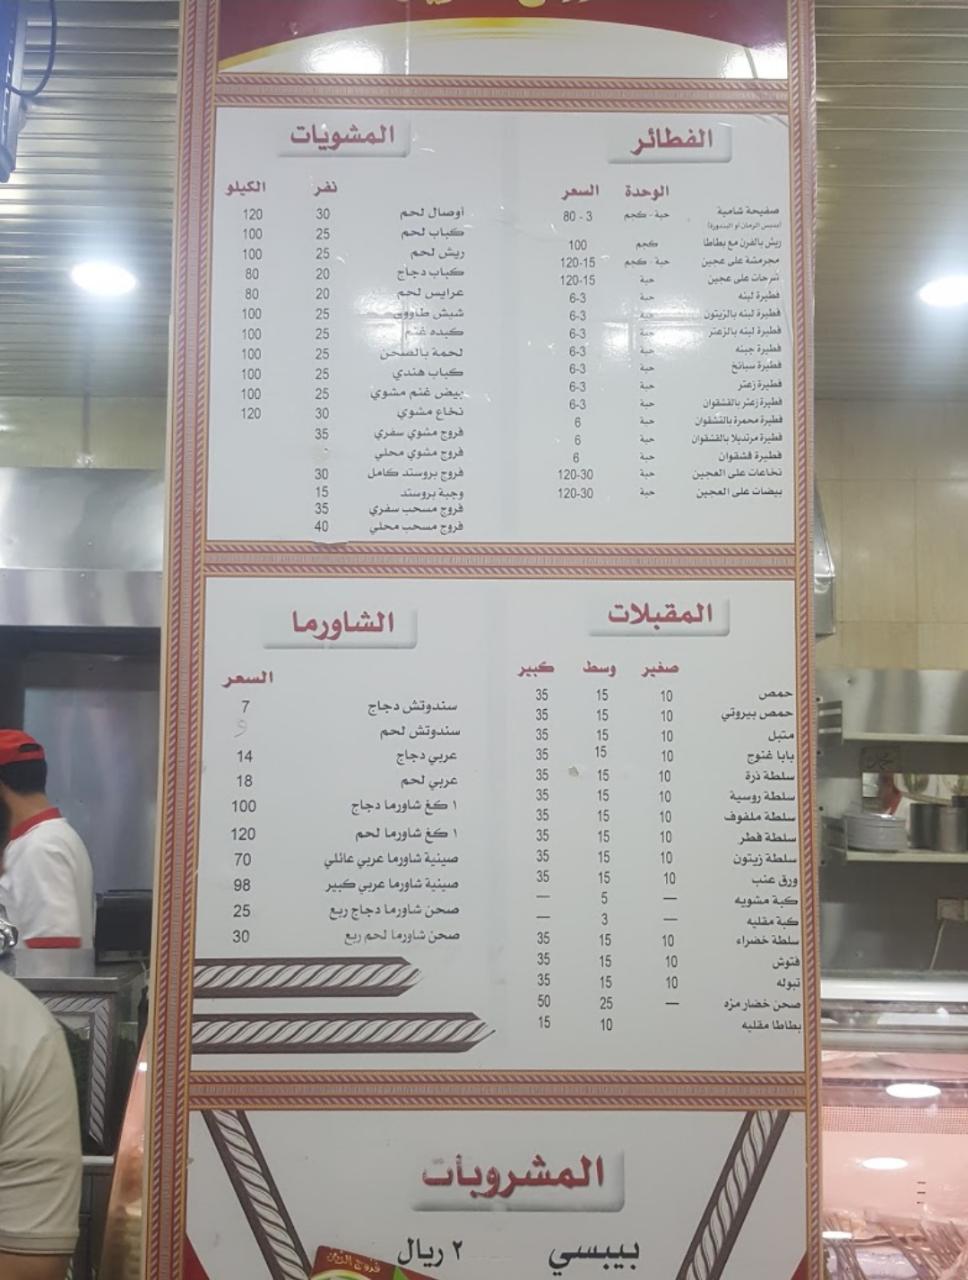 Al-Zain Grilled Chicken resturant menu